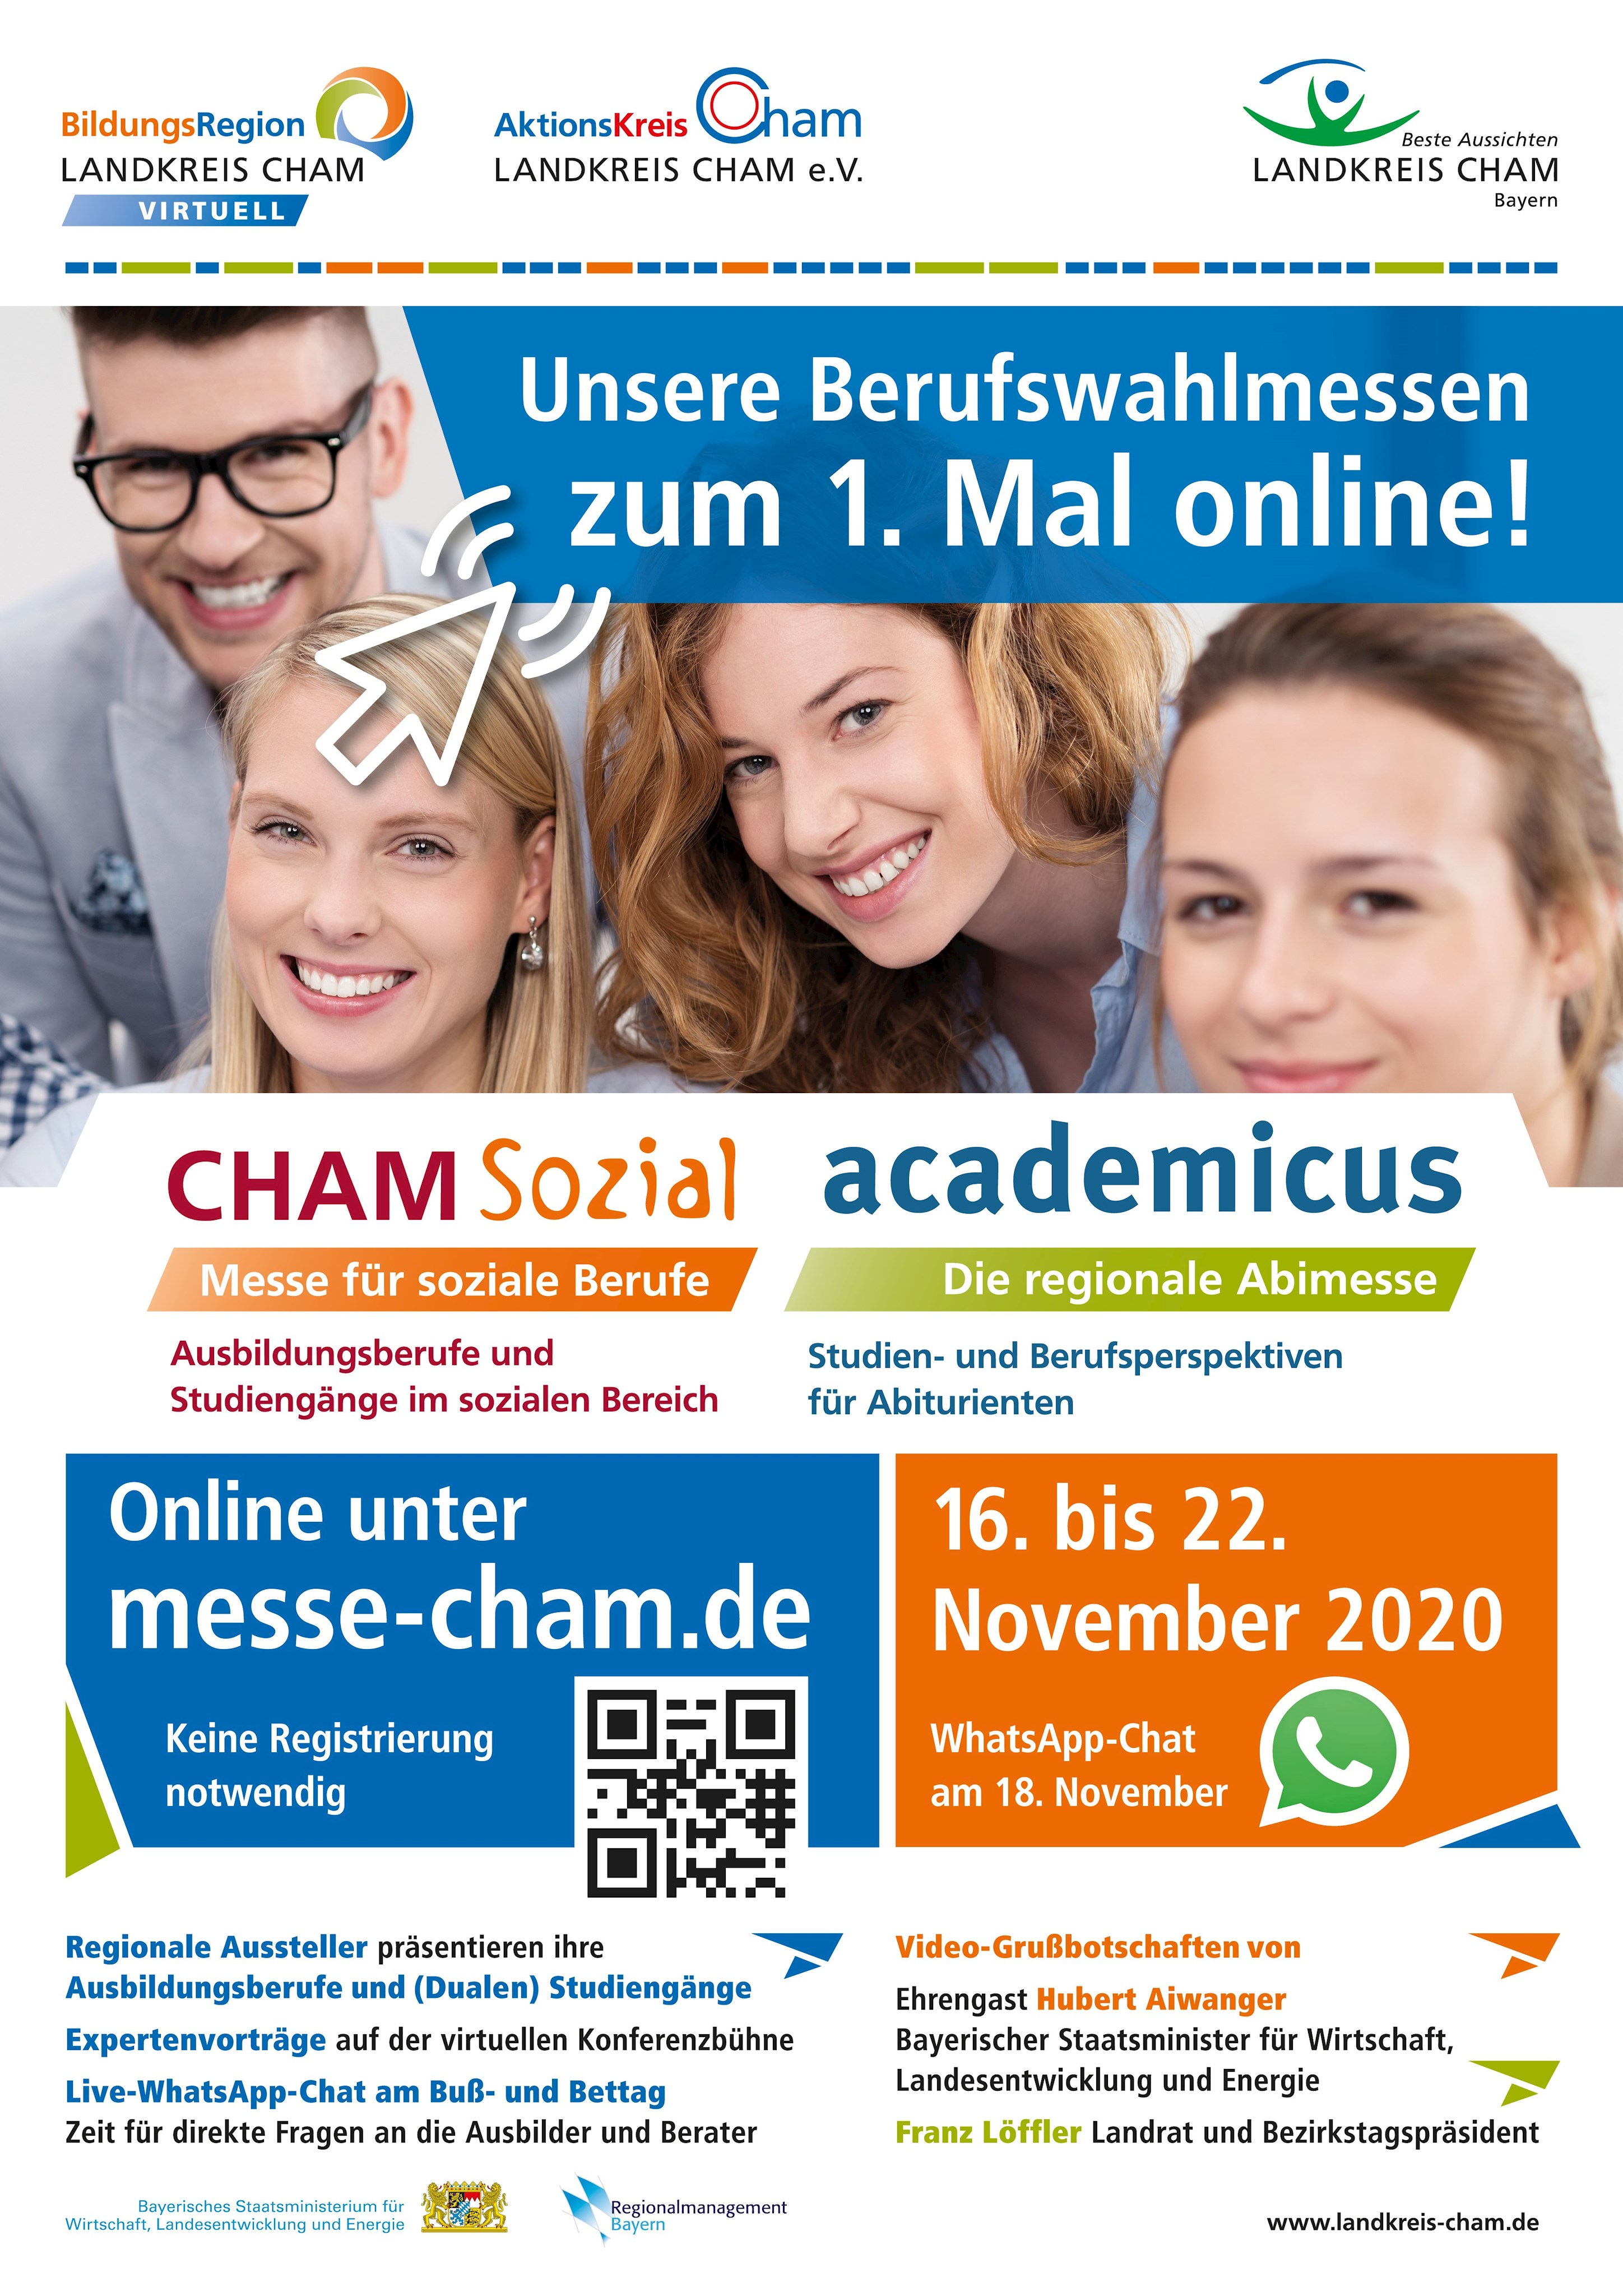 Plakat zu Onlinemessen Cham sozial und Academicus